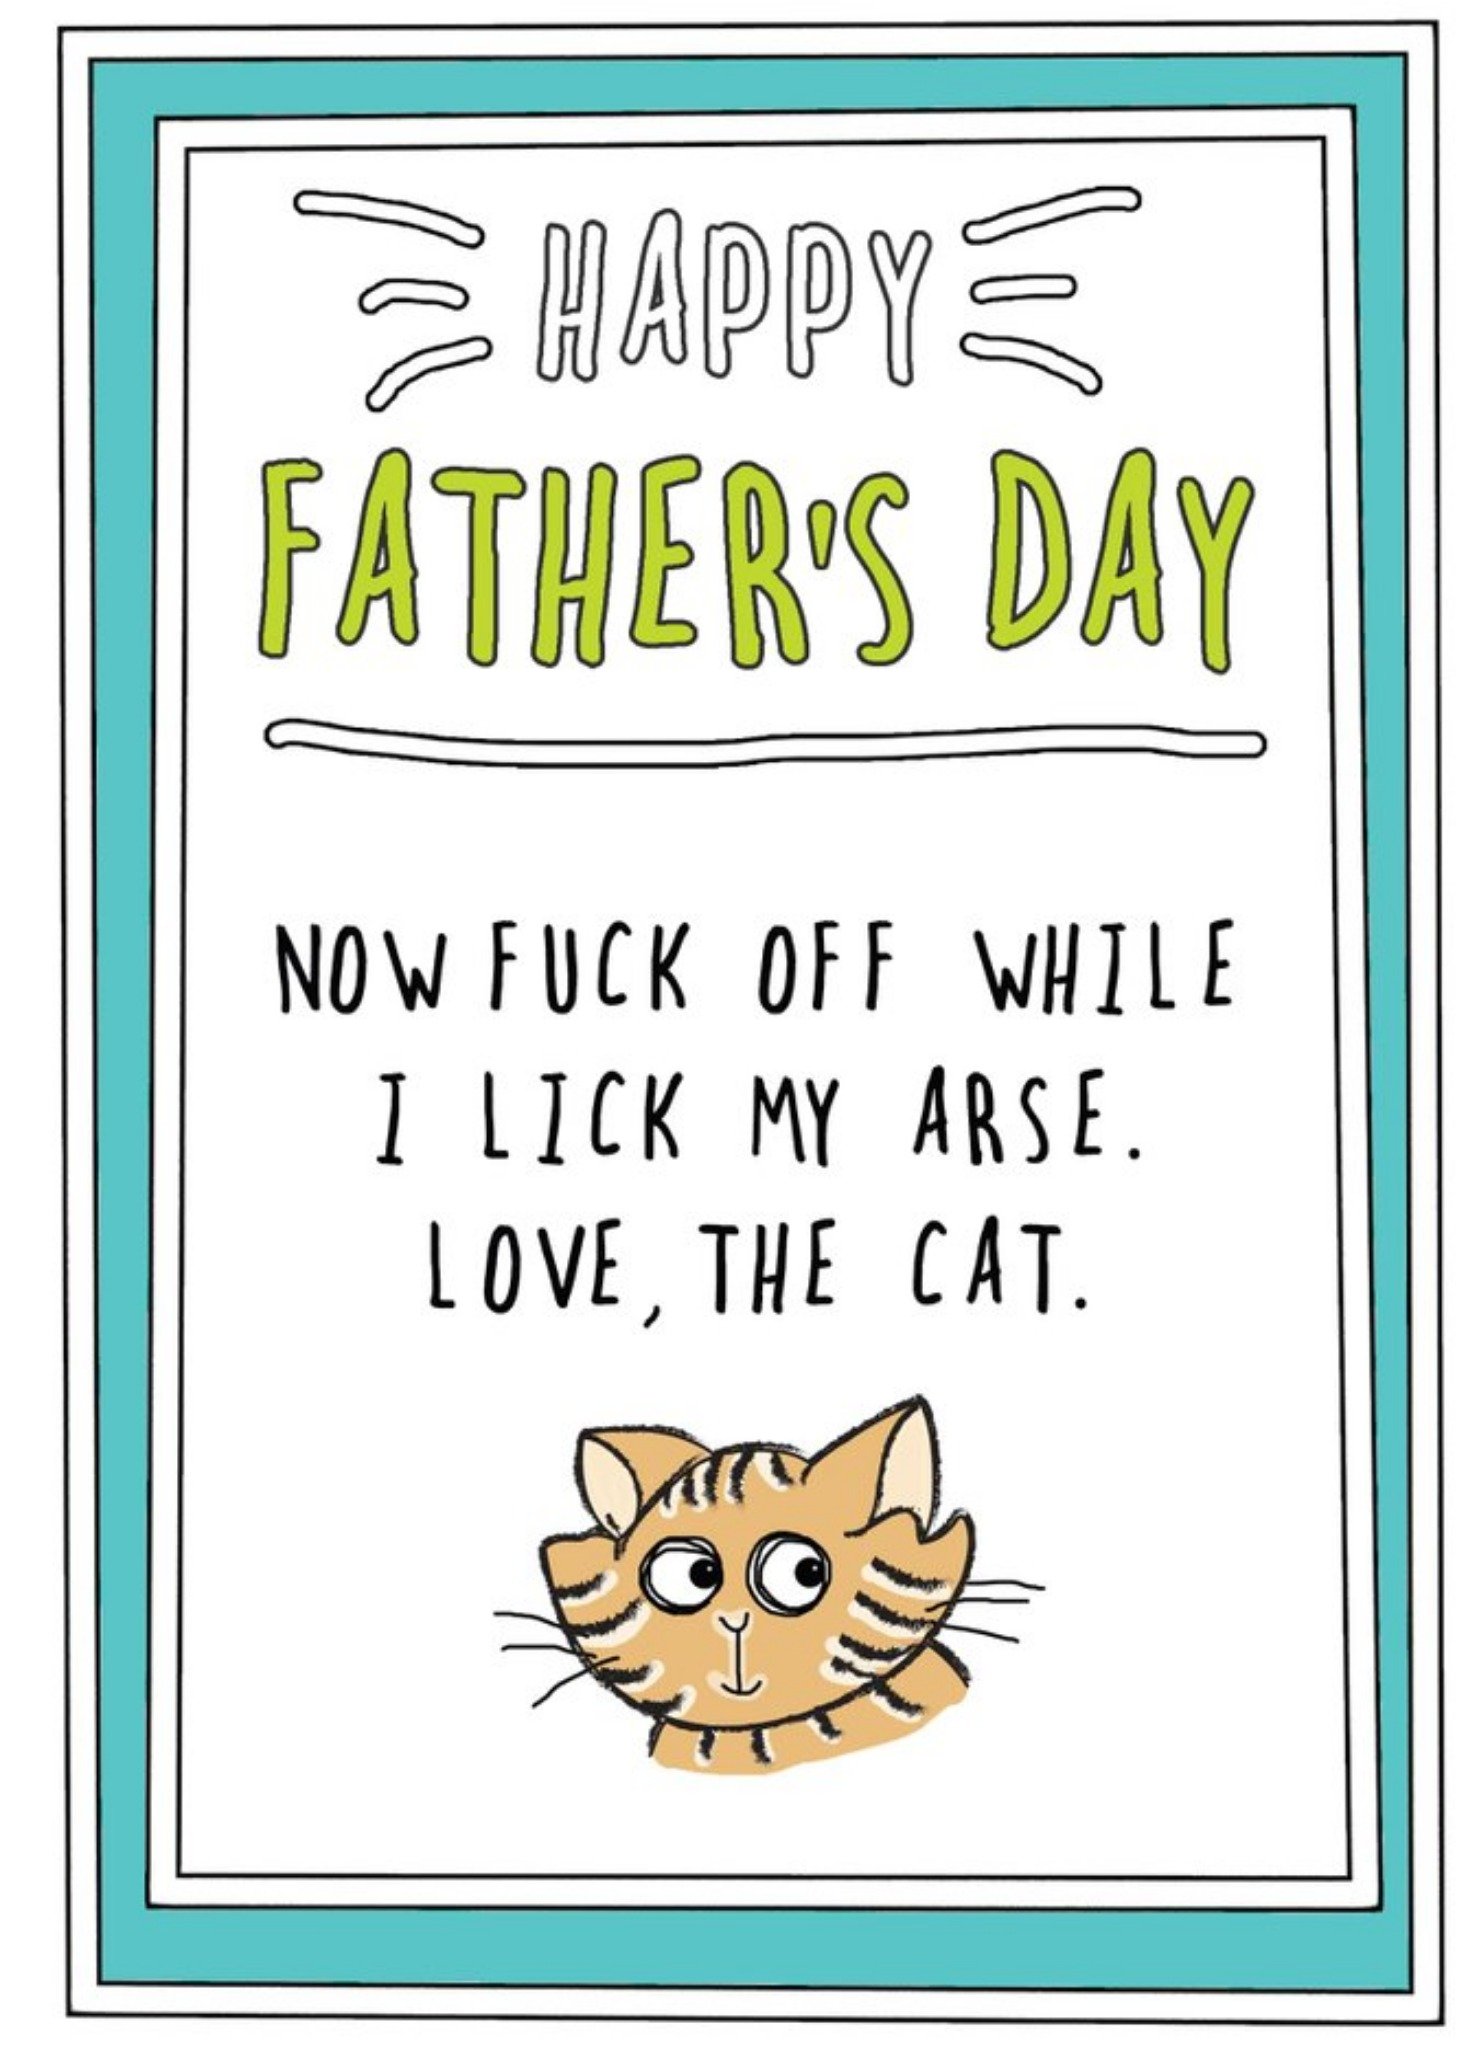 Go La La Funny Rude From The Cat Father's Day Card Ecard